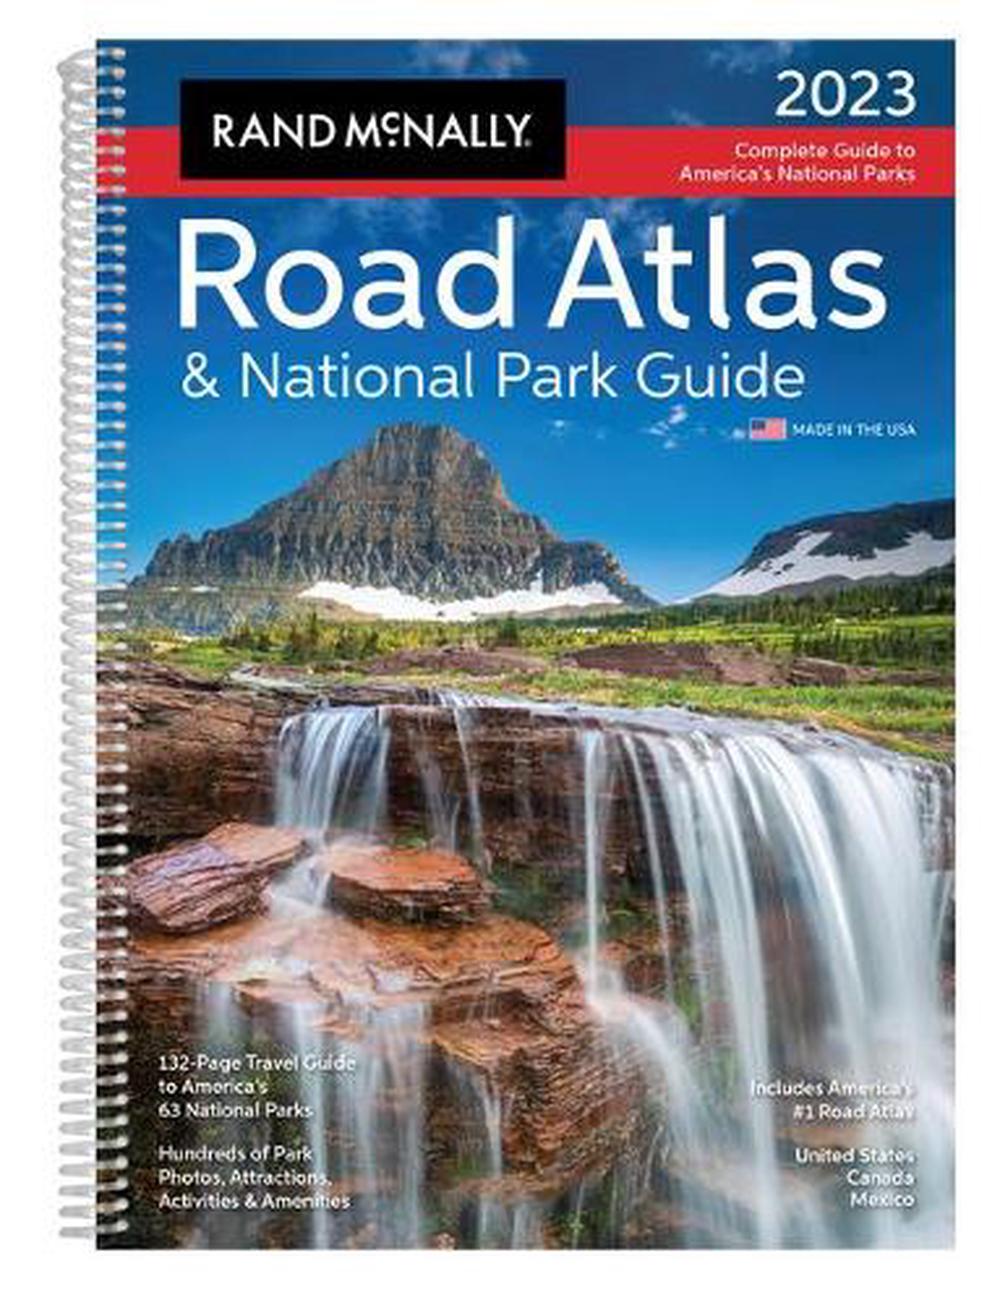 Rand Mcnally 2023 Road Atlas & National Park Guide by Rand McNally